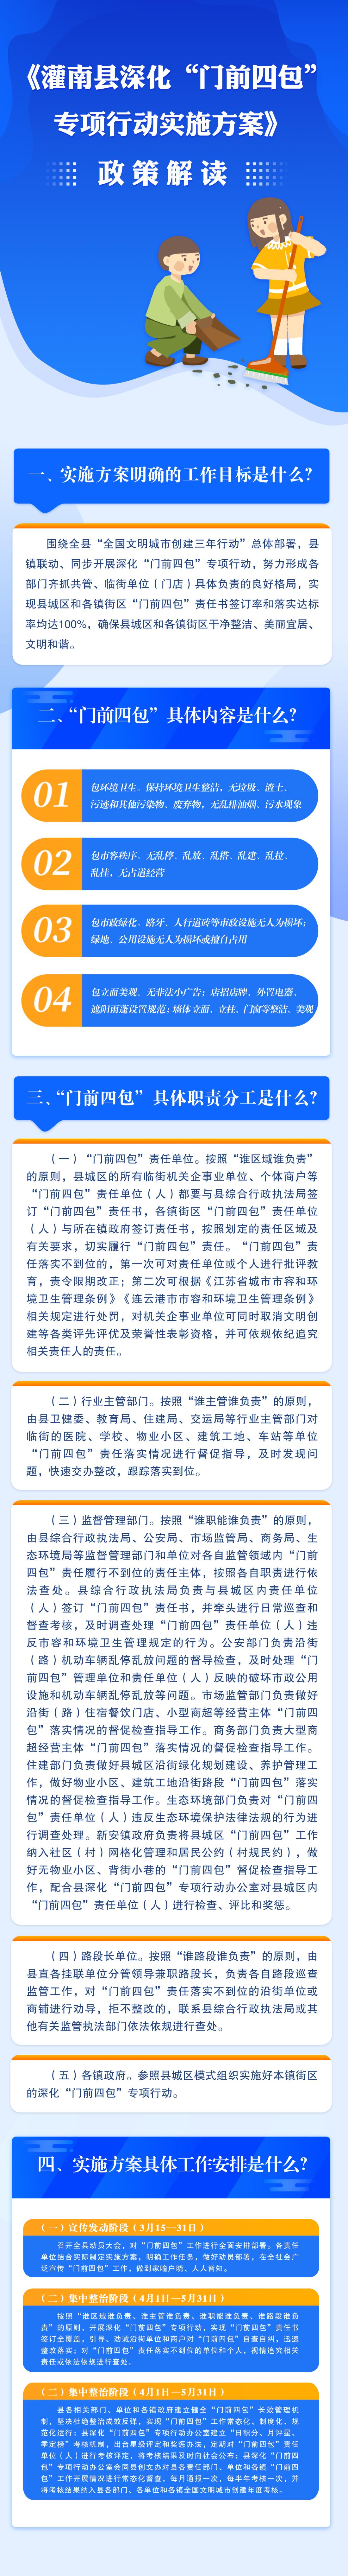 灌南县深化“门前四包”专项行动实施方案政策解读.jpg